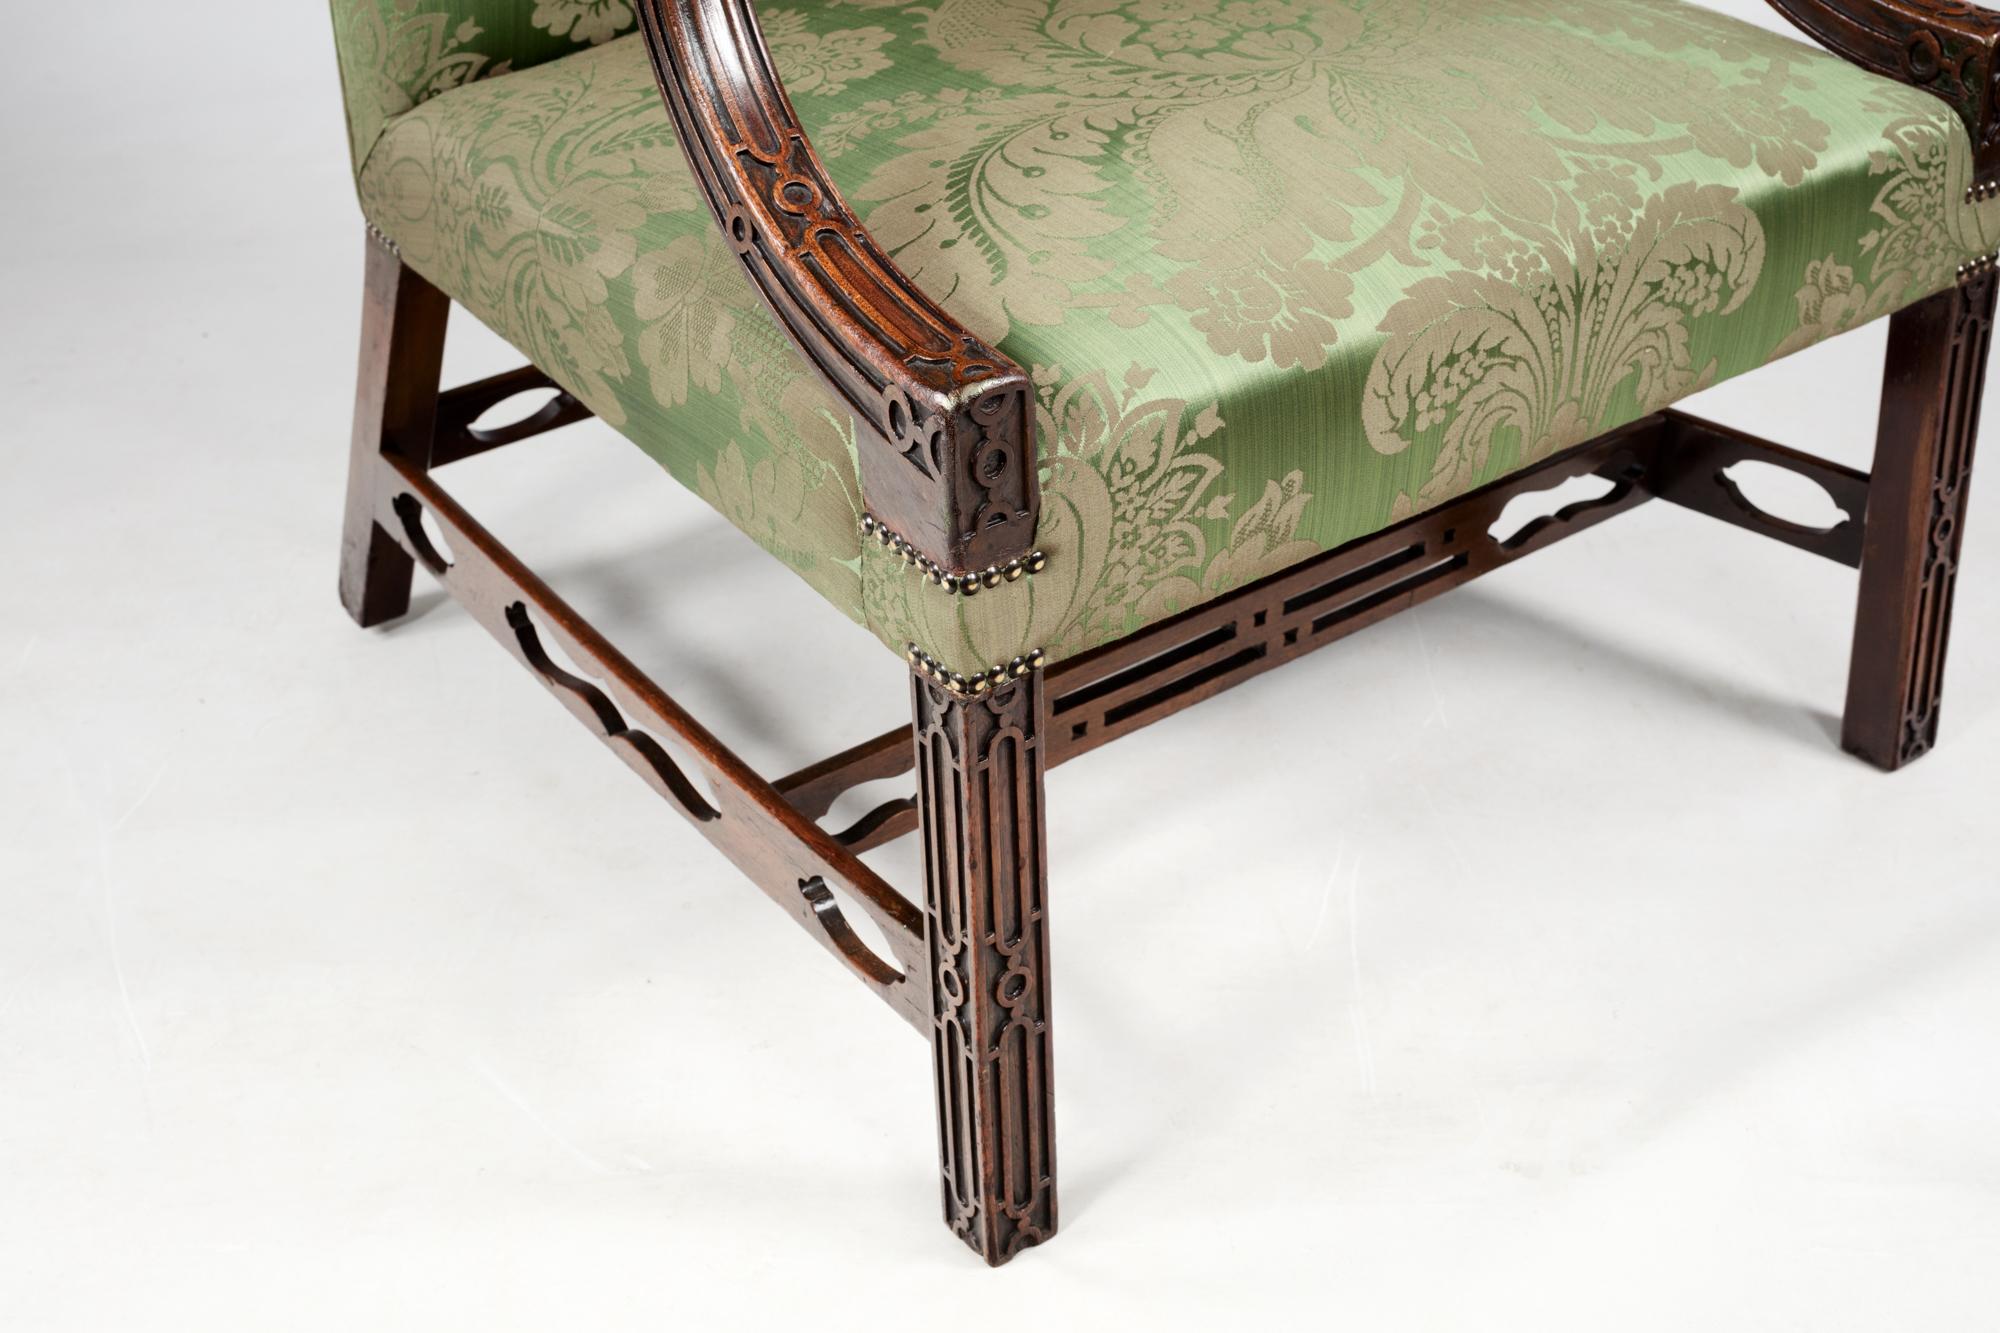 Paire de fauteuils chinois de style Chippendale du XVIIIe siècle, dont l'assise et le dossier sont nouvellement tapissés de tissu damassé vert. Cette paire de chaises est ornée d'un chantournage aveugle sur les bras et les pieds. Vers 1790.